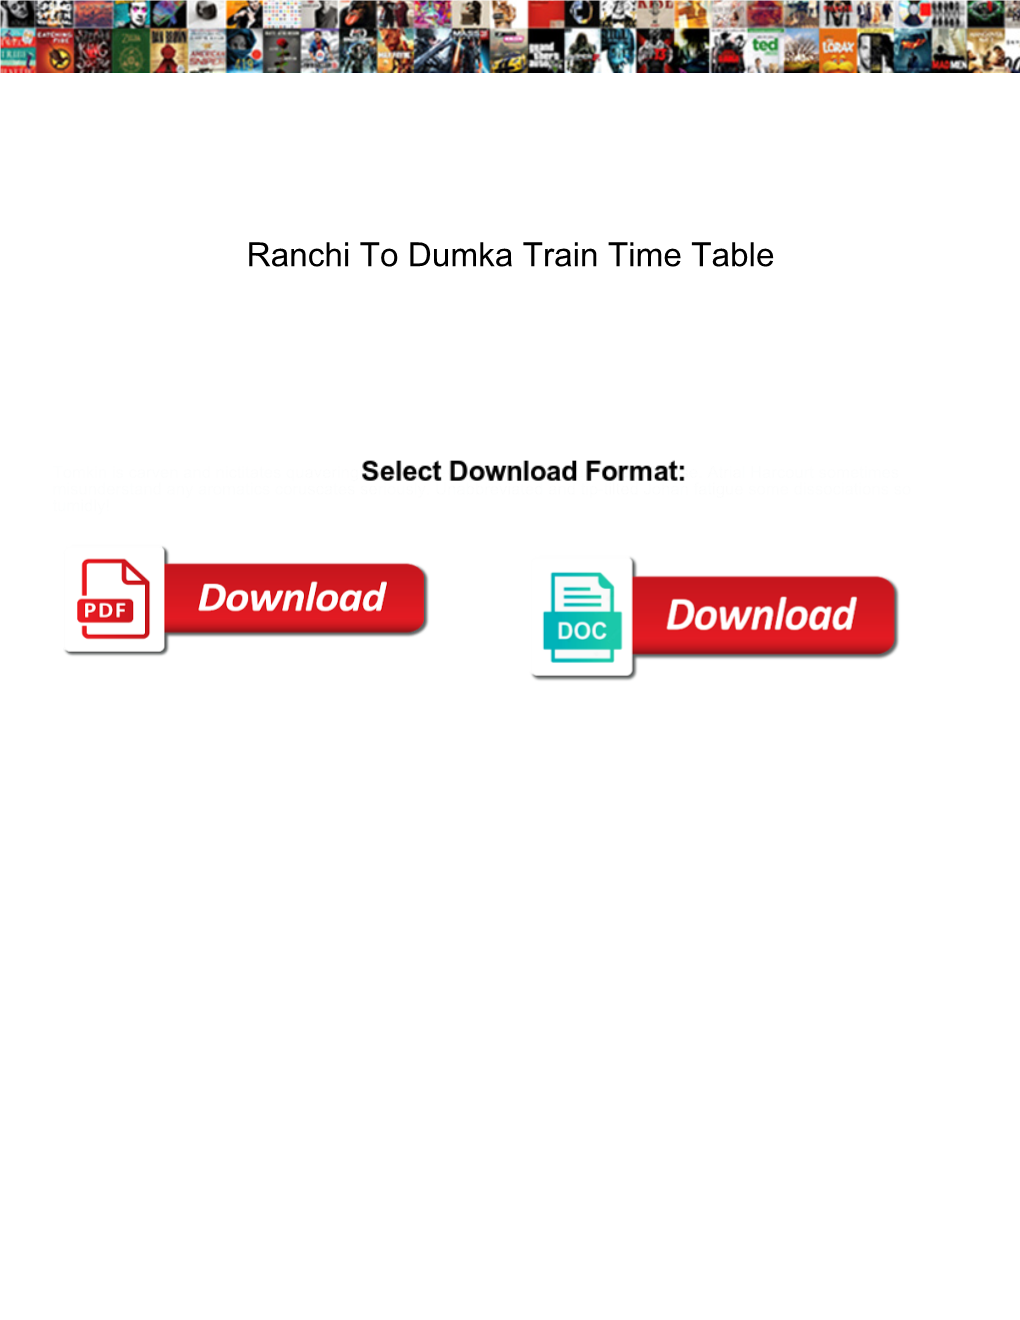 Ranchi to Dumka Train Time Table